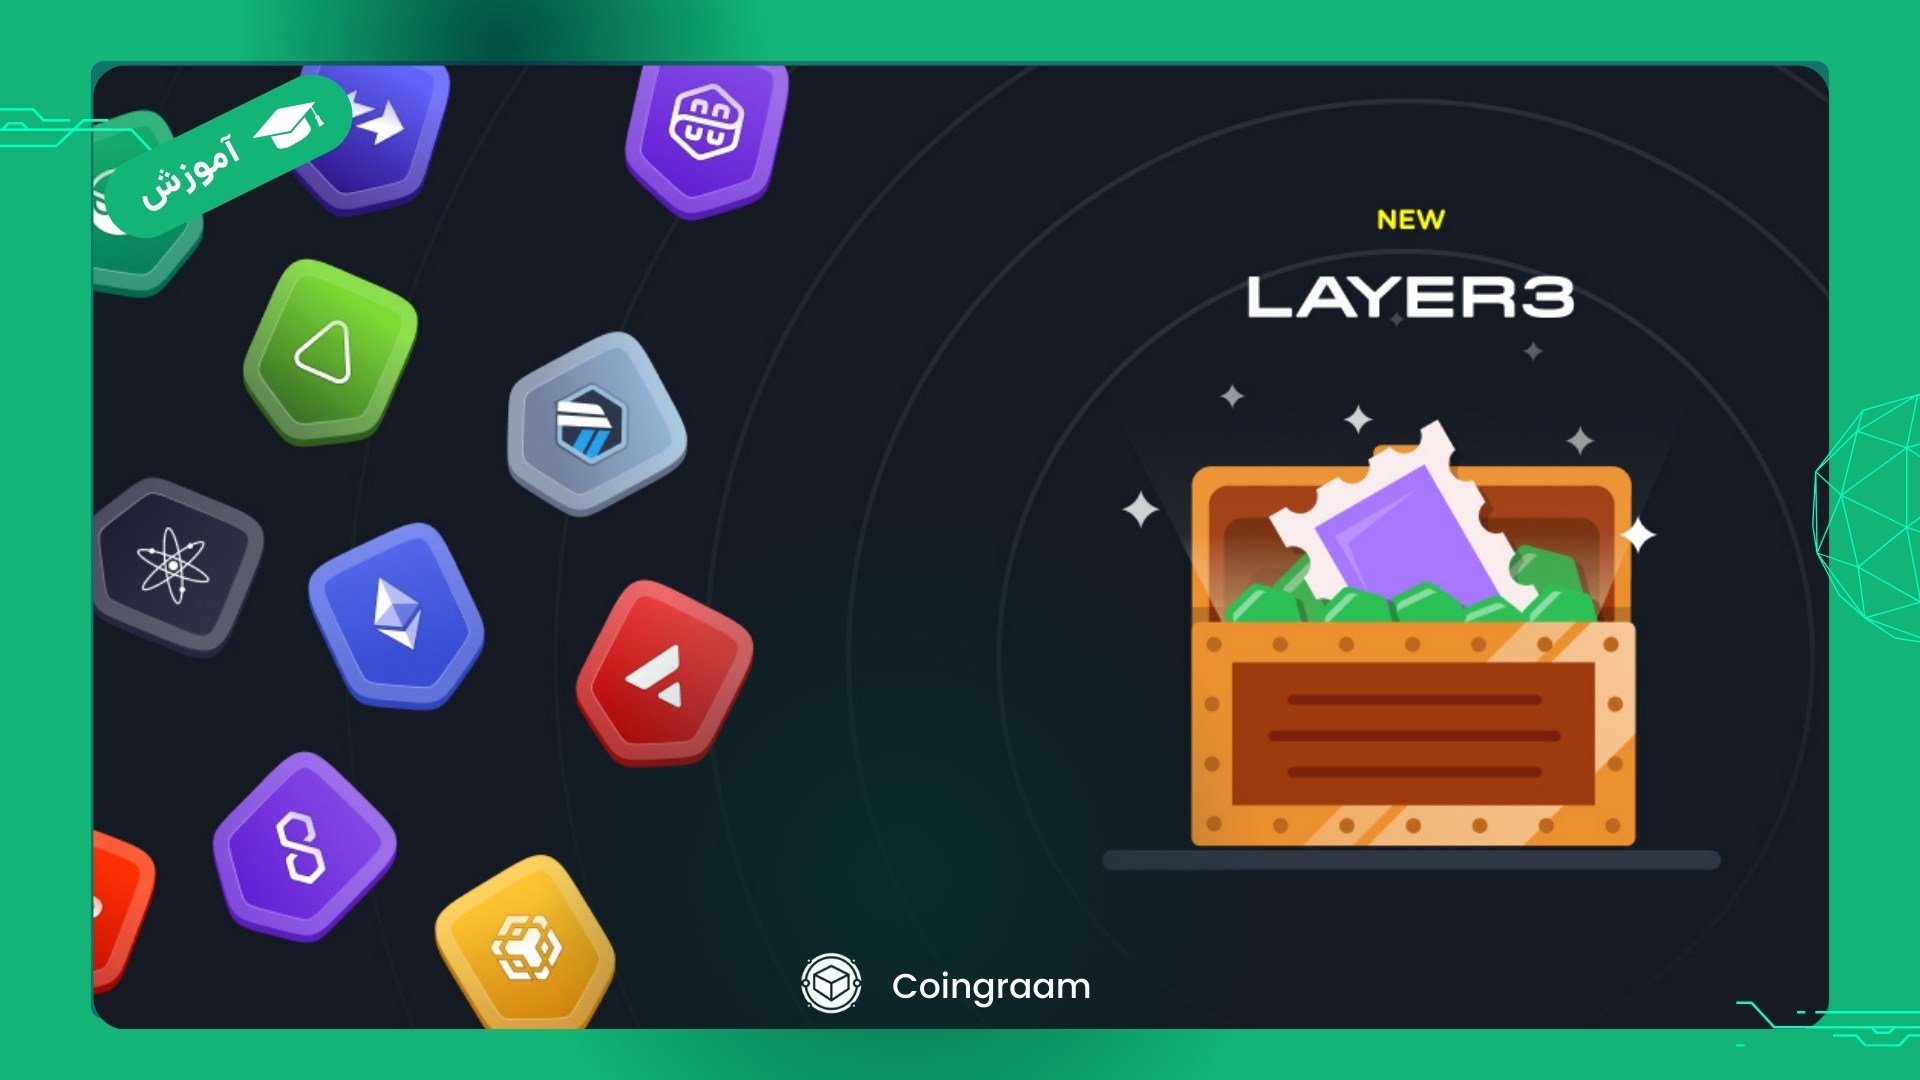 پلتفرم لایر3 چیست؟ آموزش کار با سیستم امتیازدهی به کاربران در Layer3